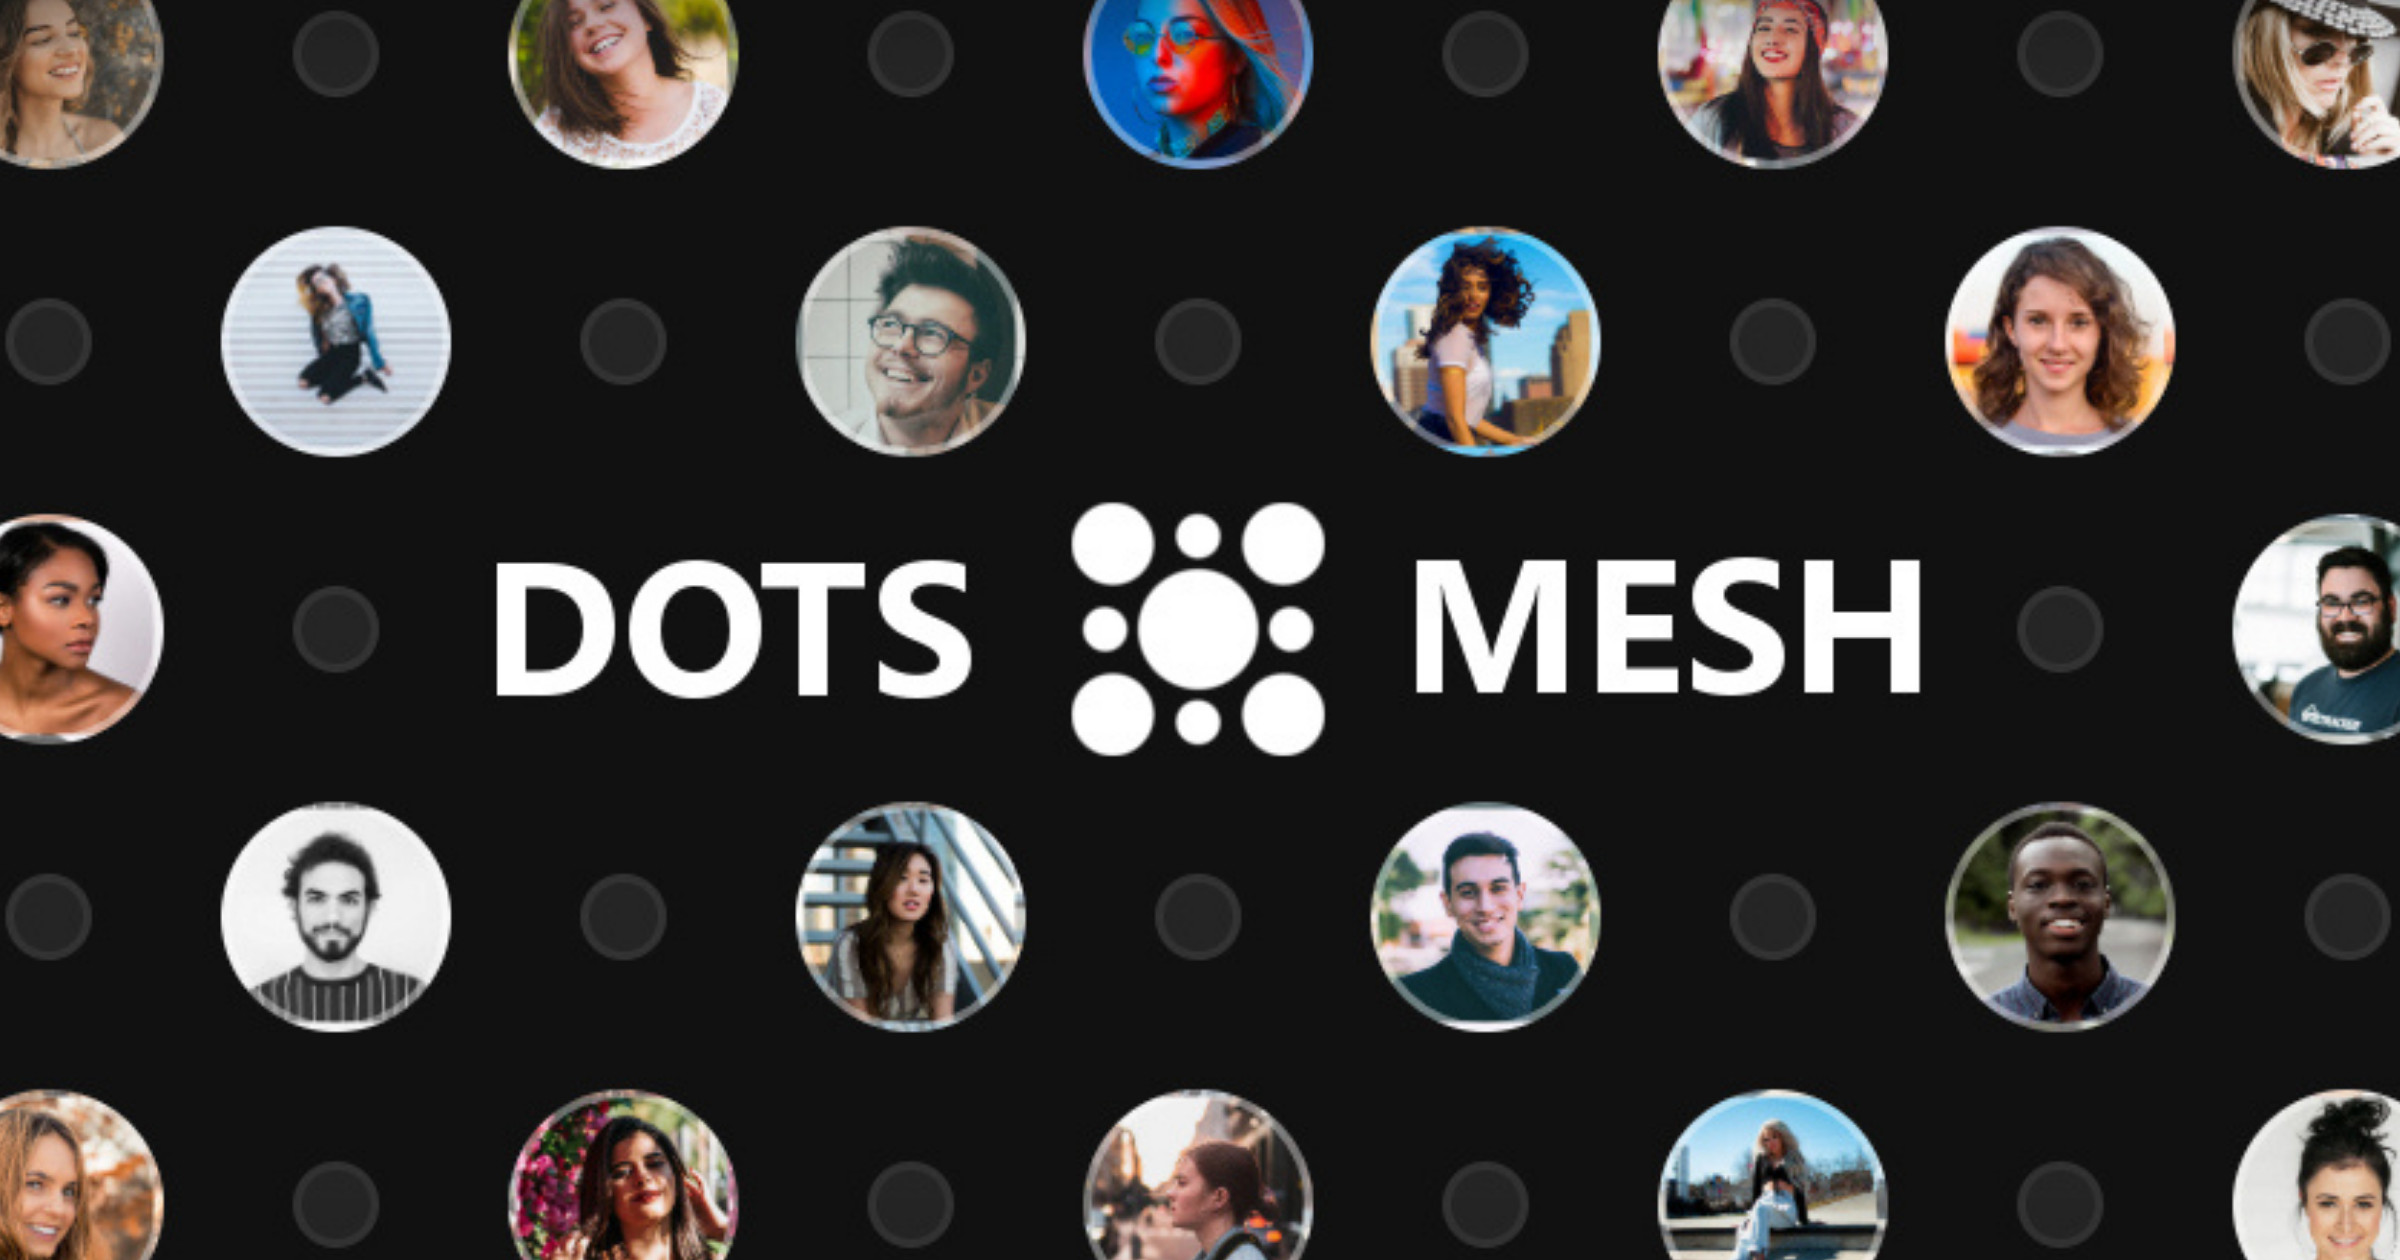 Dots Mesh is an open social platform